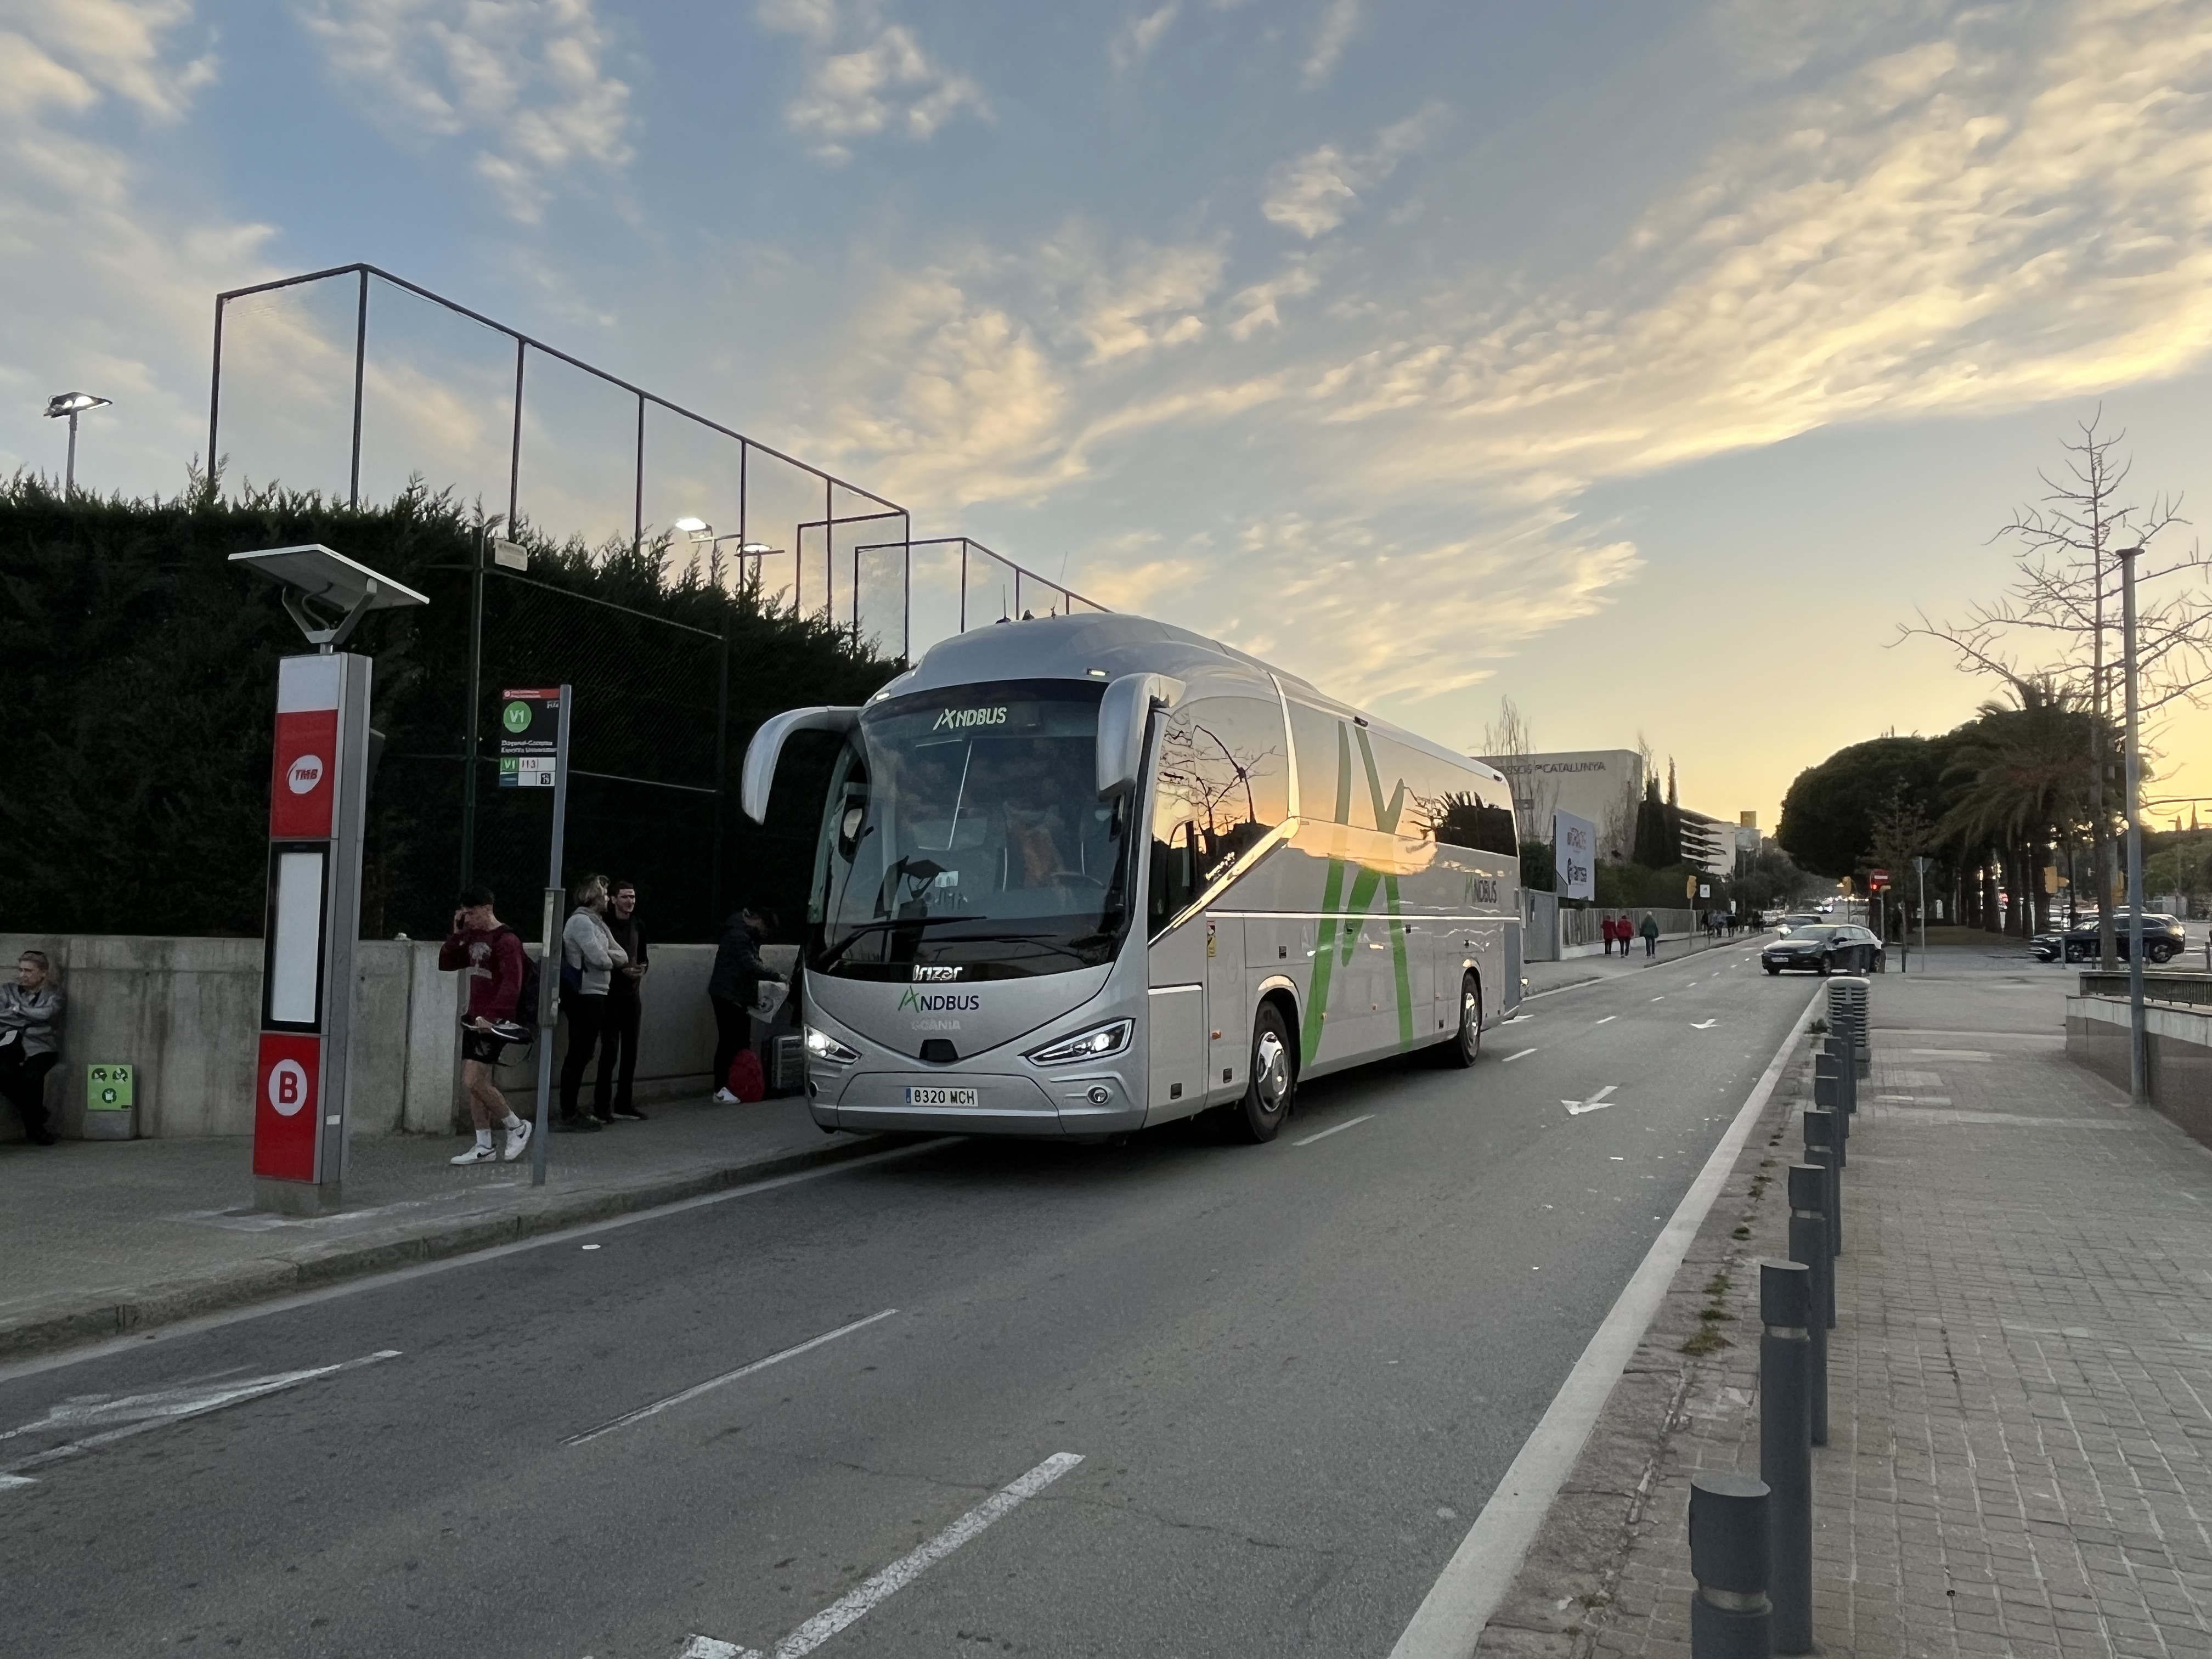 Parada autobus aeropuerto barcelona